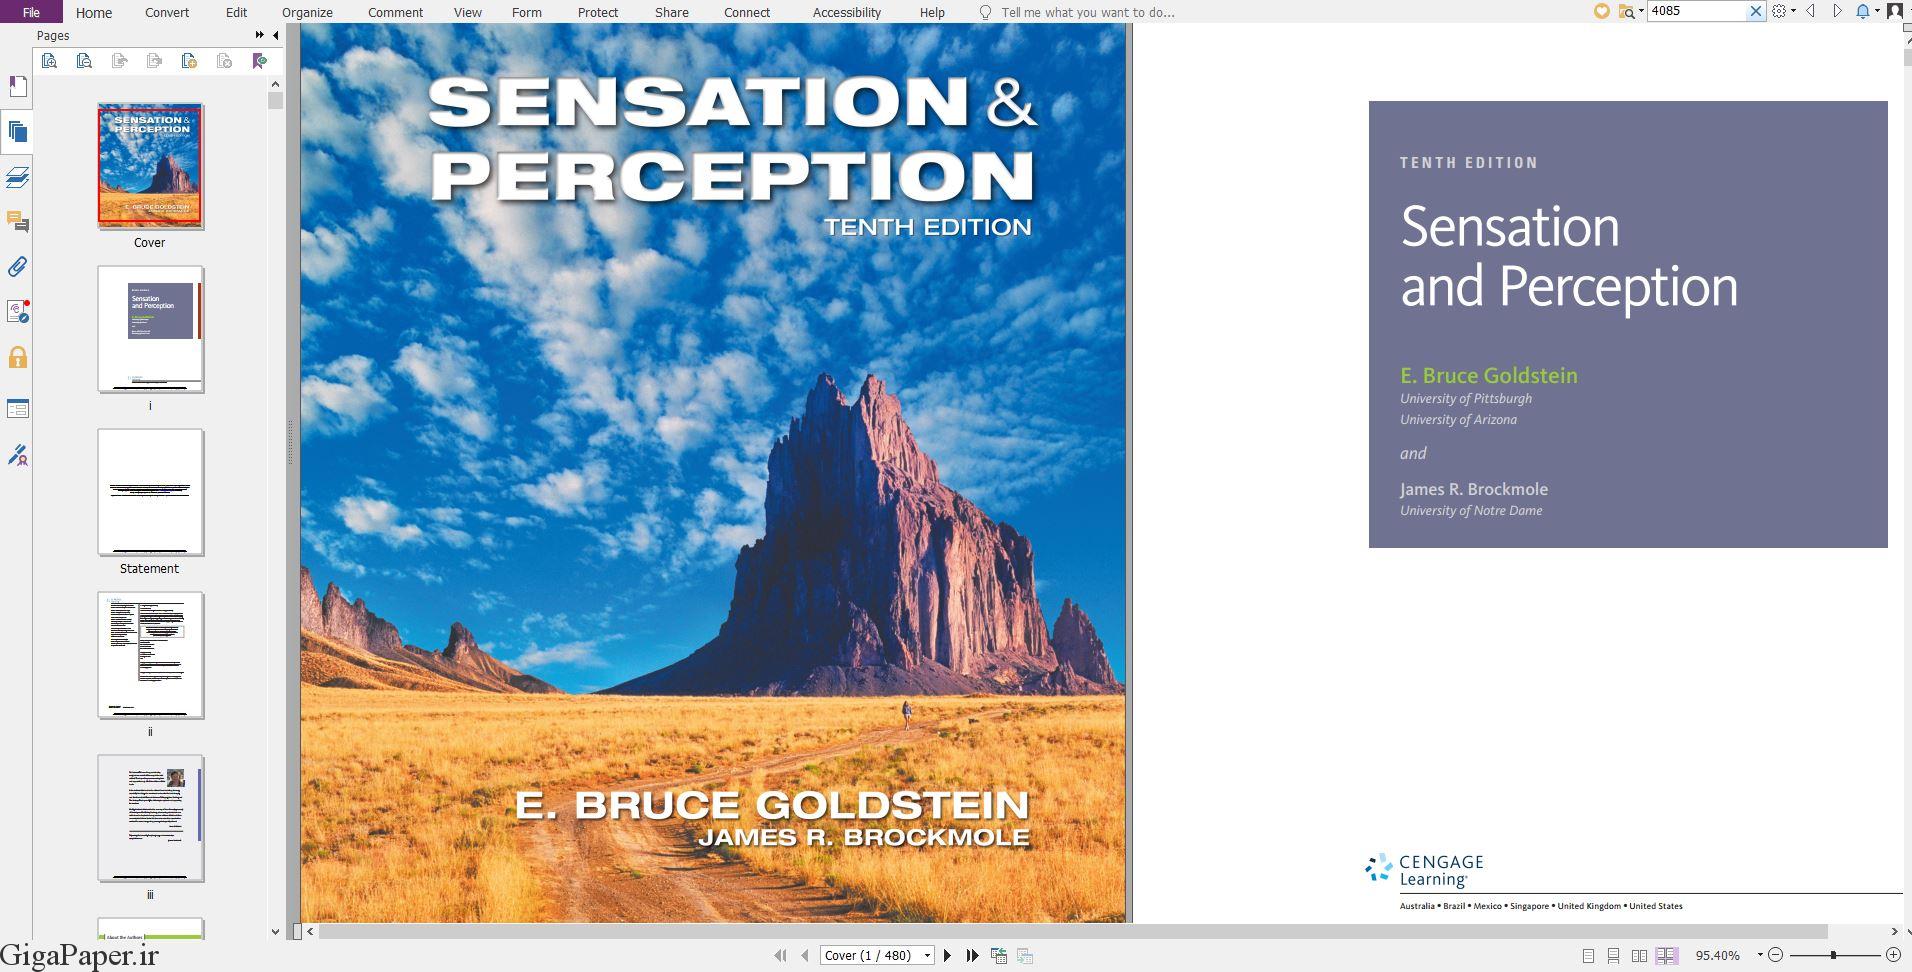 خرید کتاب زبان اصلی خرید کتاب از امازون amazon.com ، گوگل بوکز دانلود کتاب خارجی Sensation and Perception 10th Edition دانلود کتاب Sensation and Perception